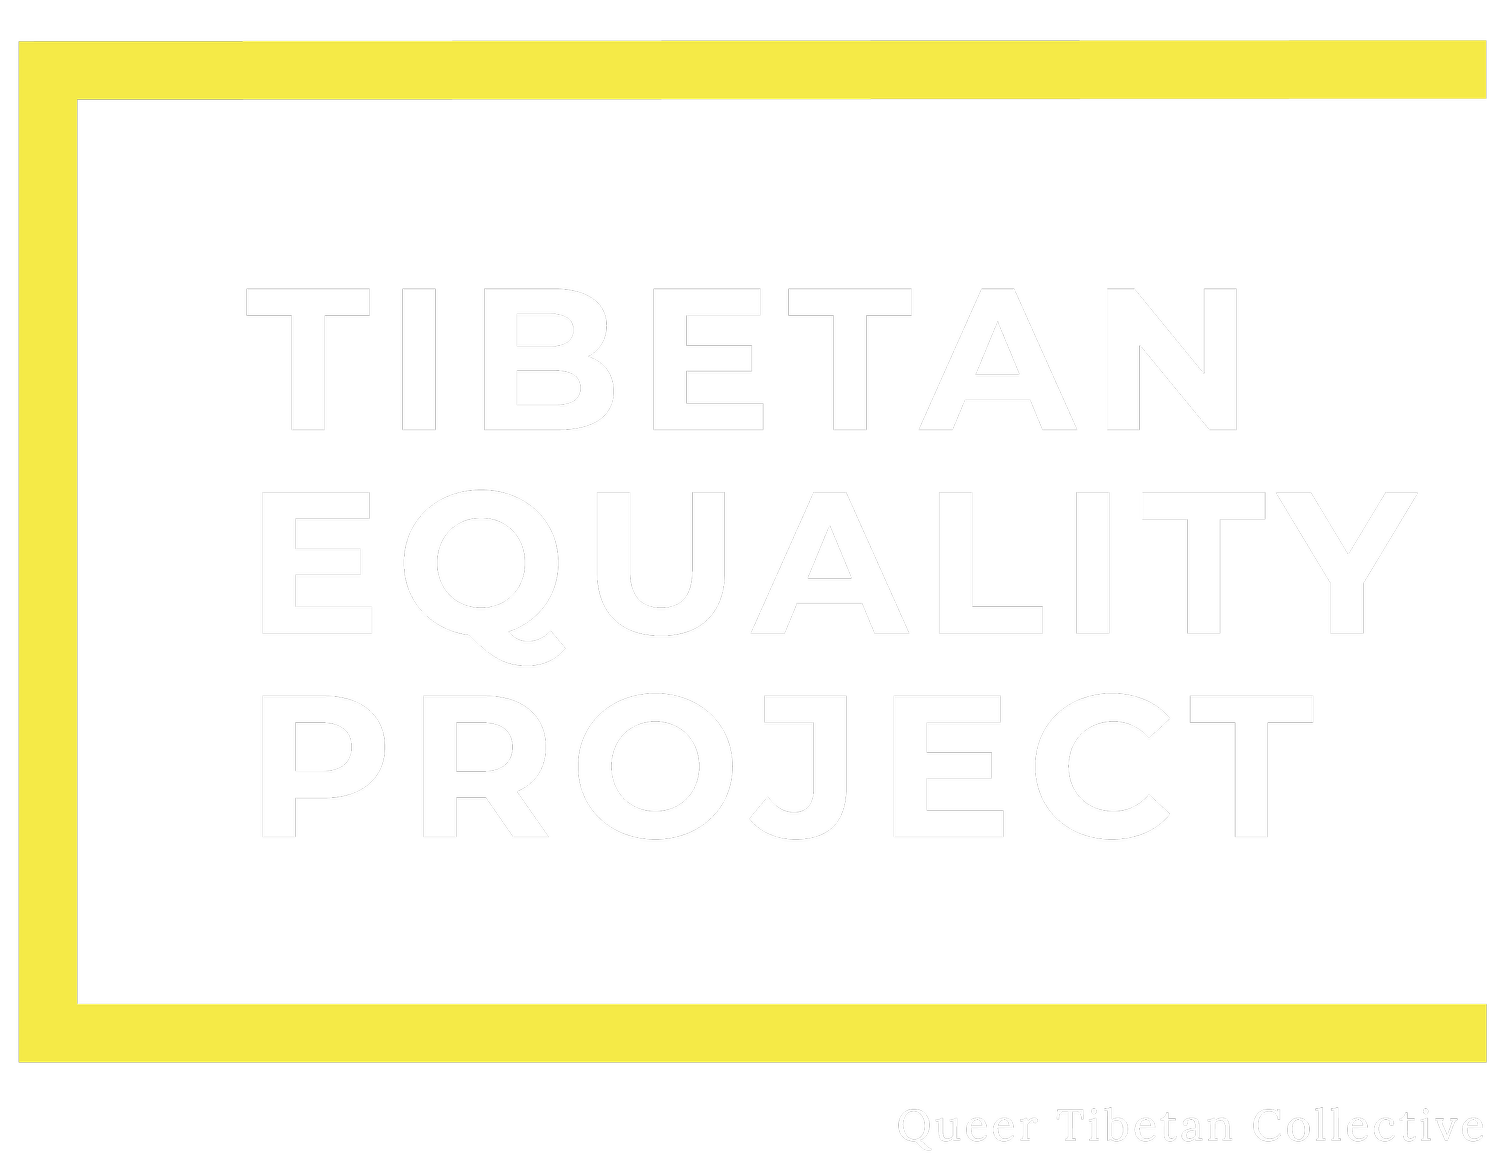 Tibetan Equality Project